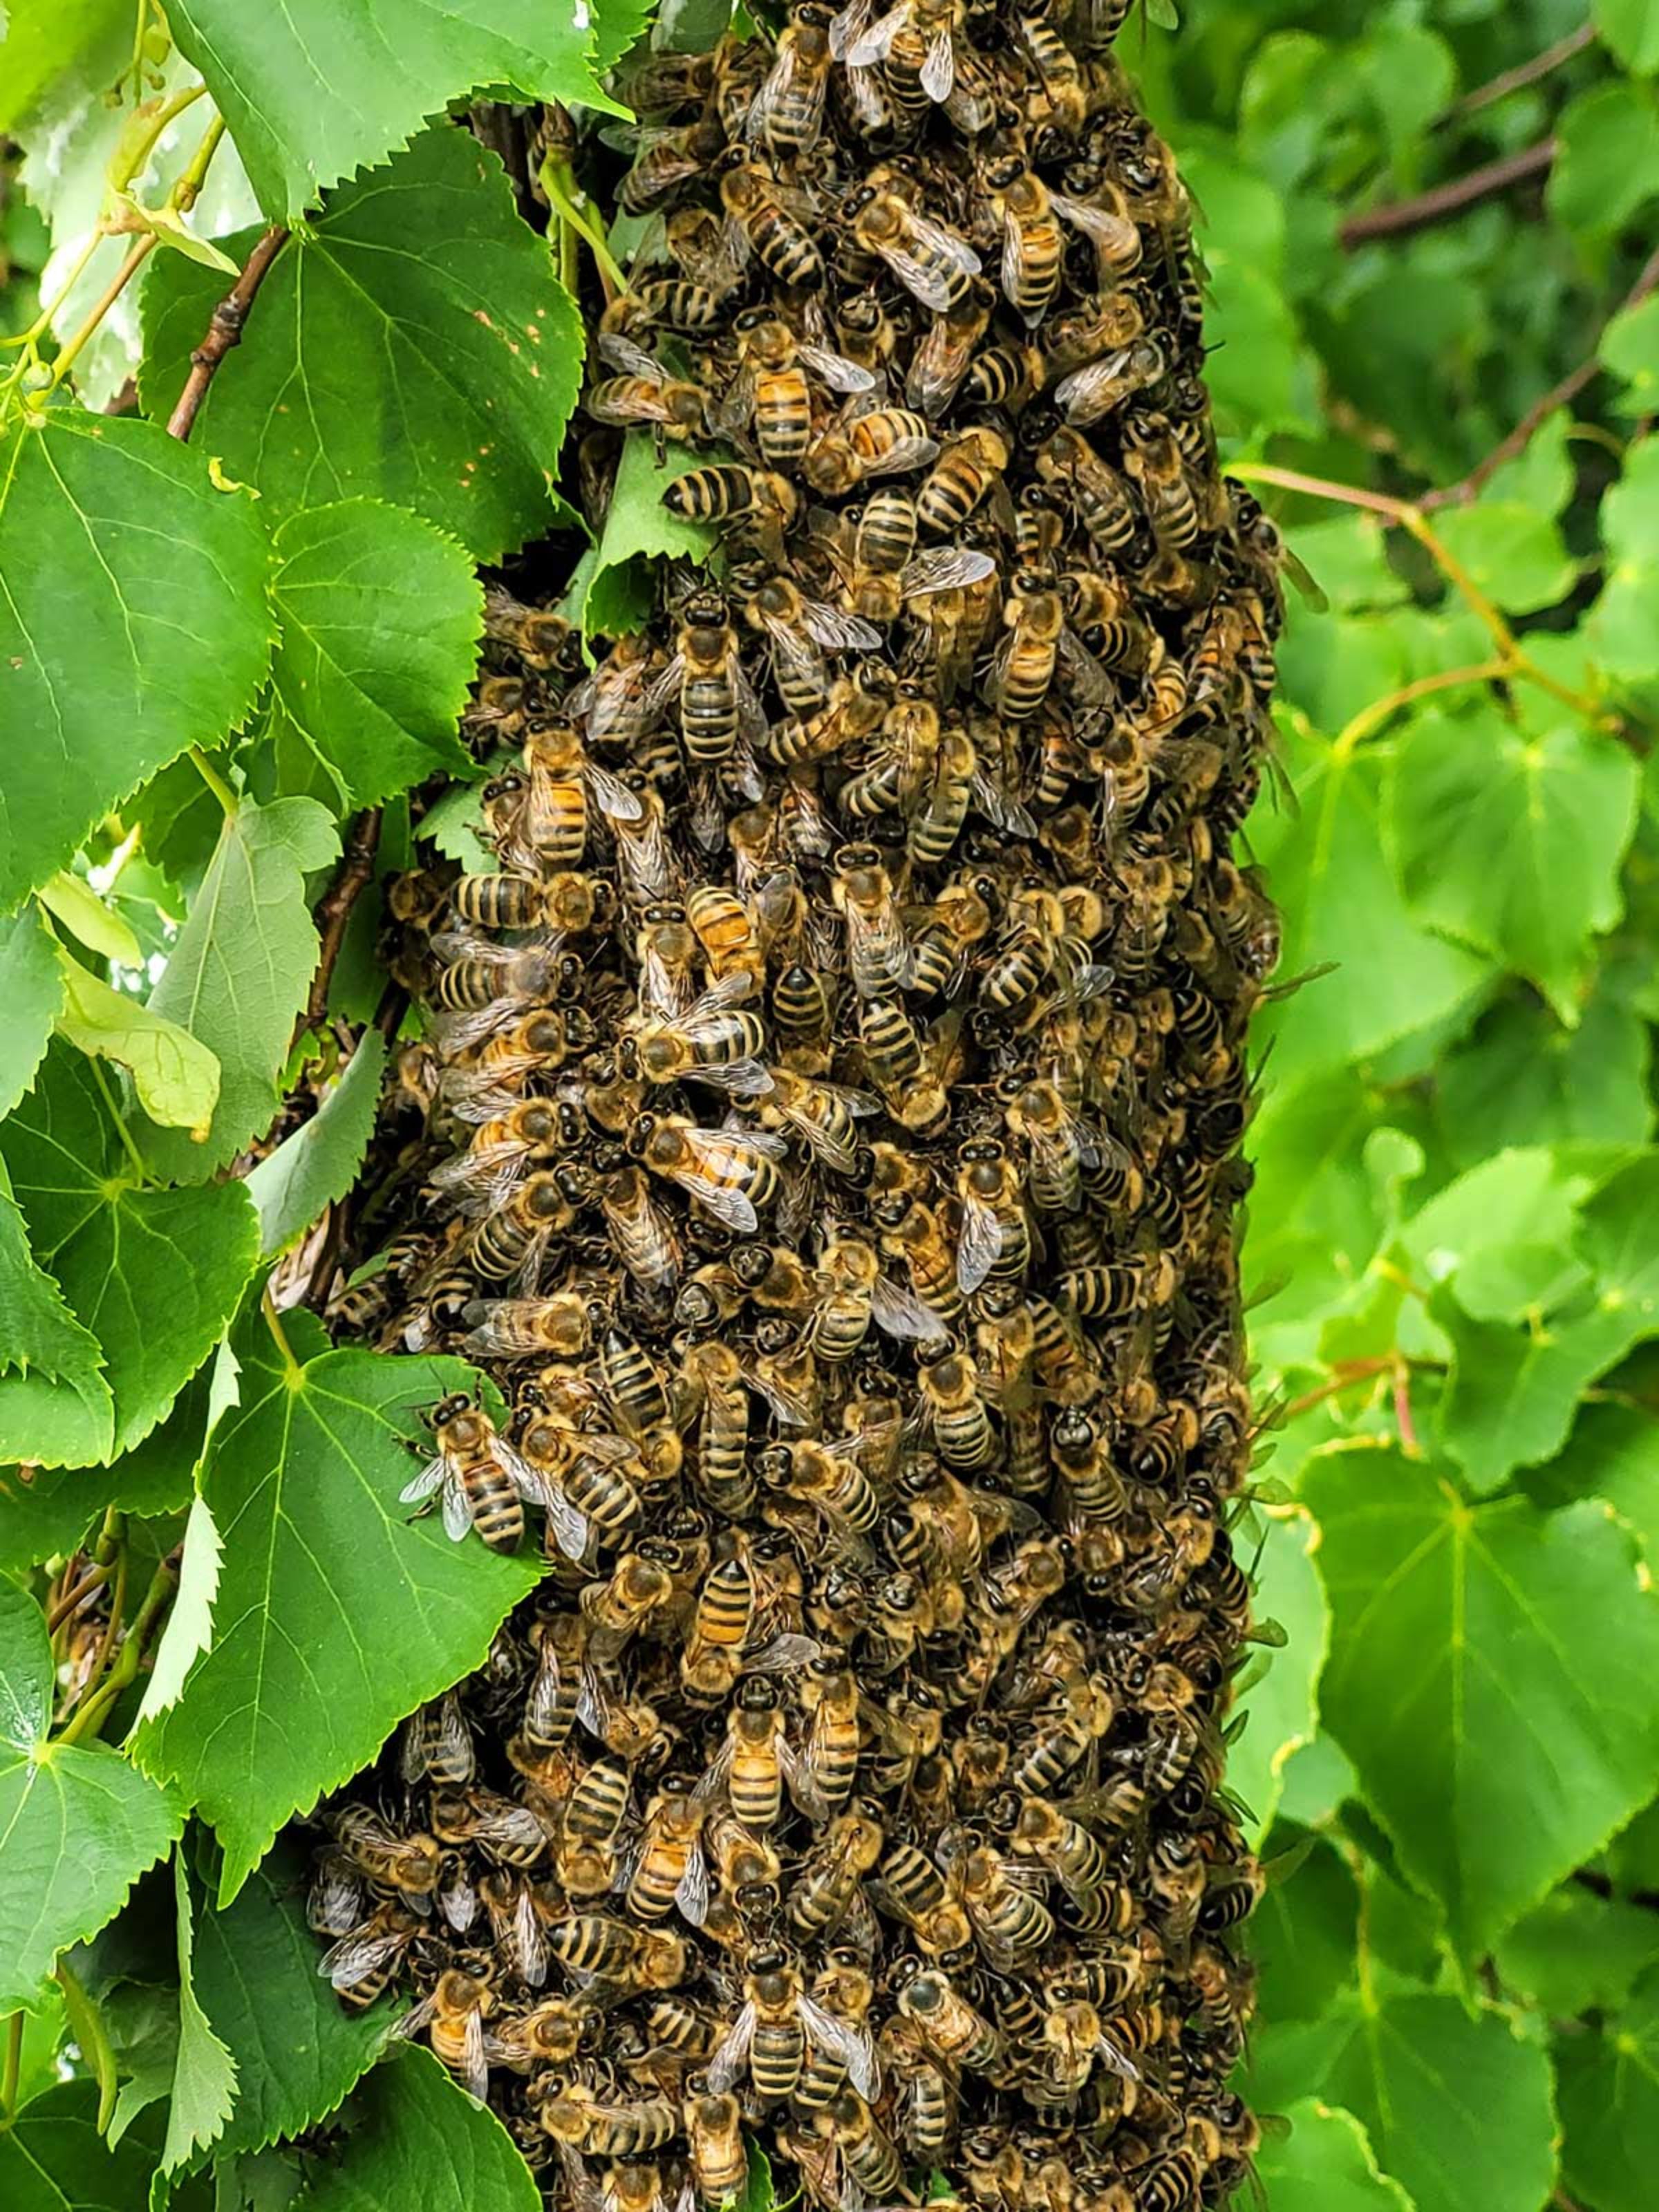 Ein ausgebüchster Schwarm Bienen, so etwas kann man nur mit dem Rad entdecken.  